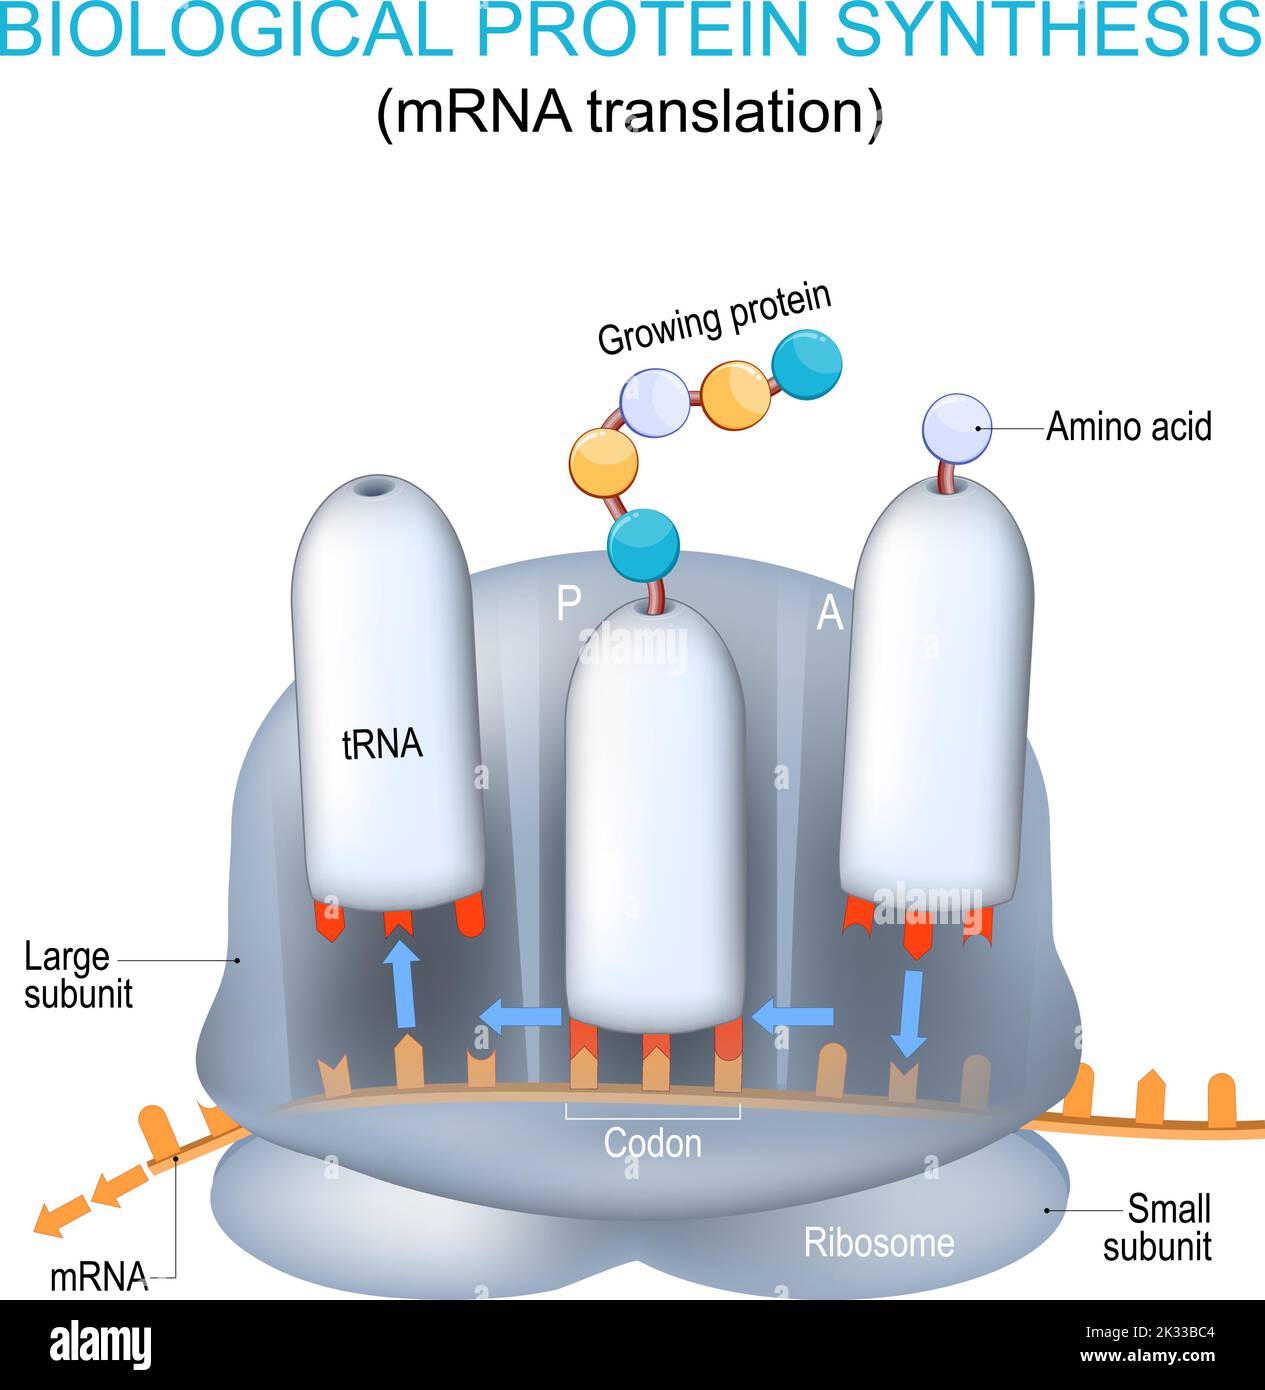 Struttura e anatomia del ribosoma. Sintesi proteica biologica. Traduzione dell'mRNA e sintesi delle proteine mediante un ribosoma. TRNA e mRNA Illustrazione Vettoriale